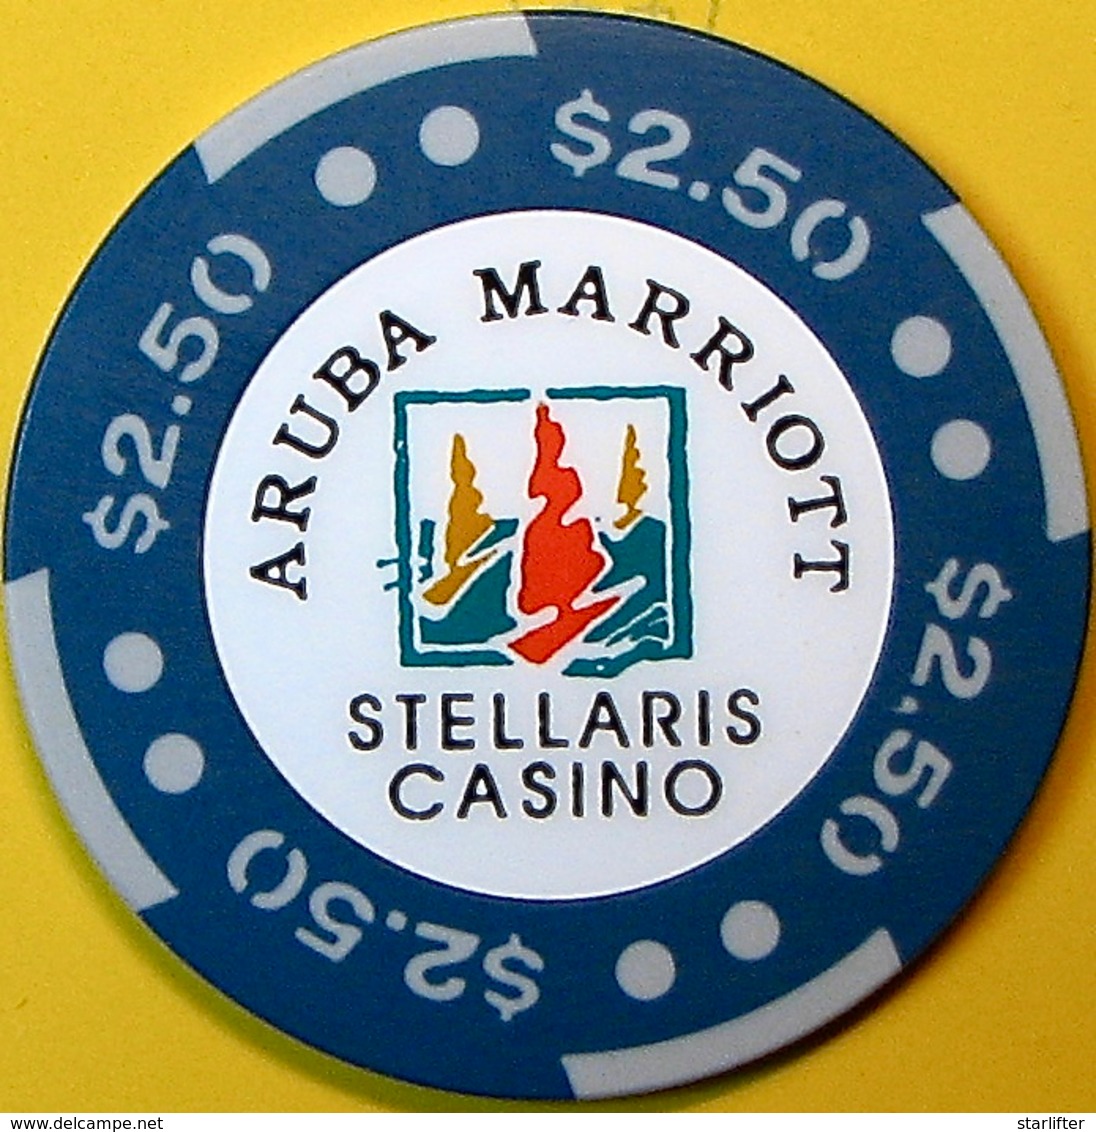 $2.50 Casino Chip. Stellaris, Aruba. N74. - Casino